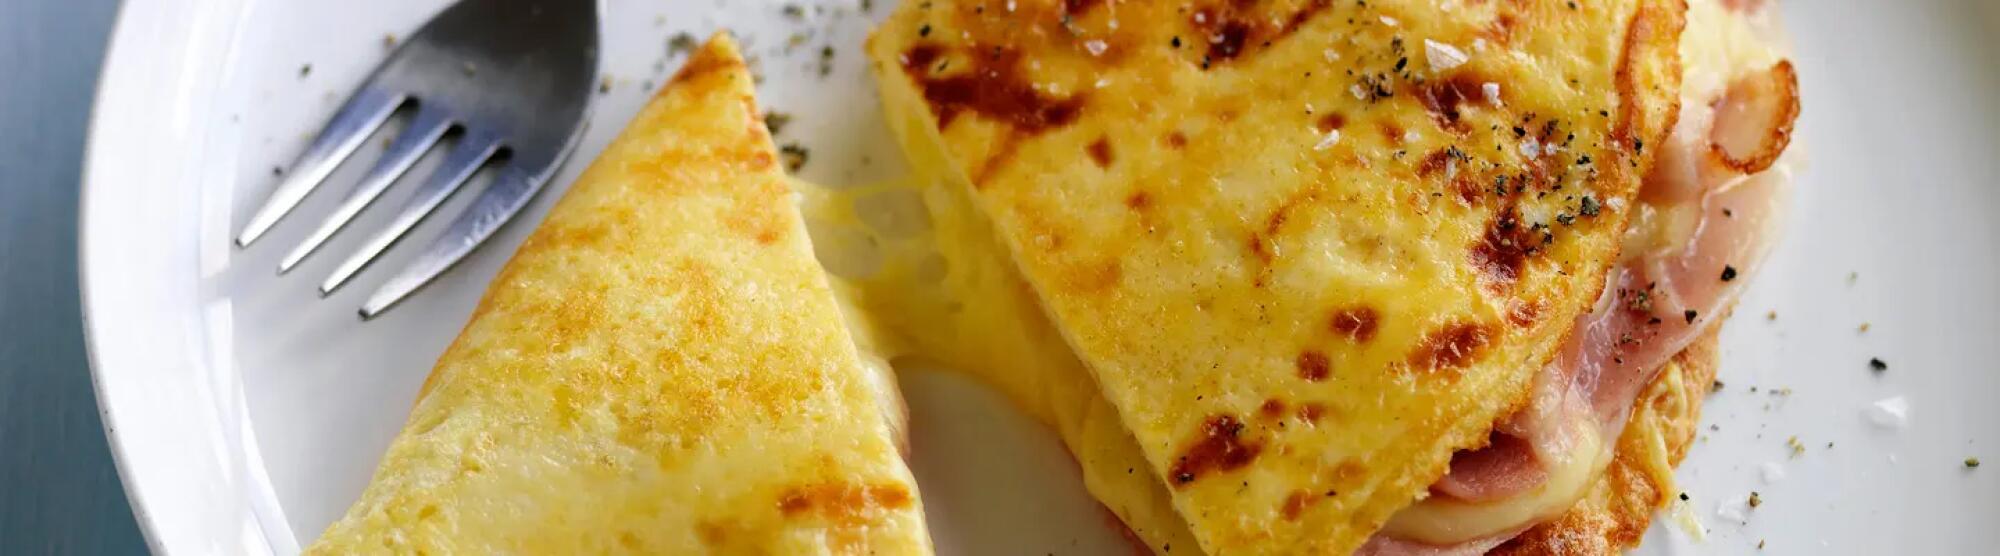 Recette : Omelette au fromage et au jambon